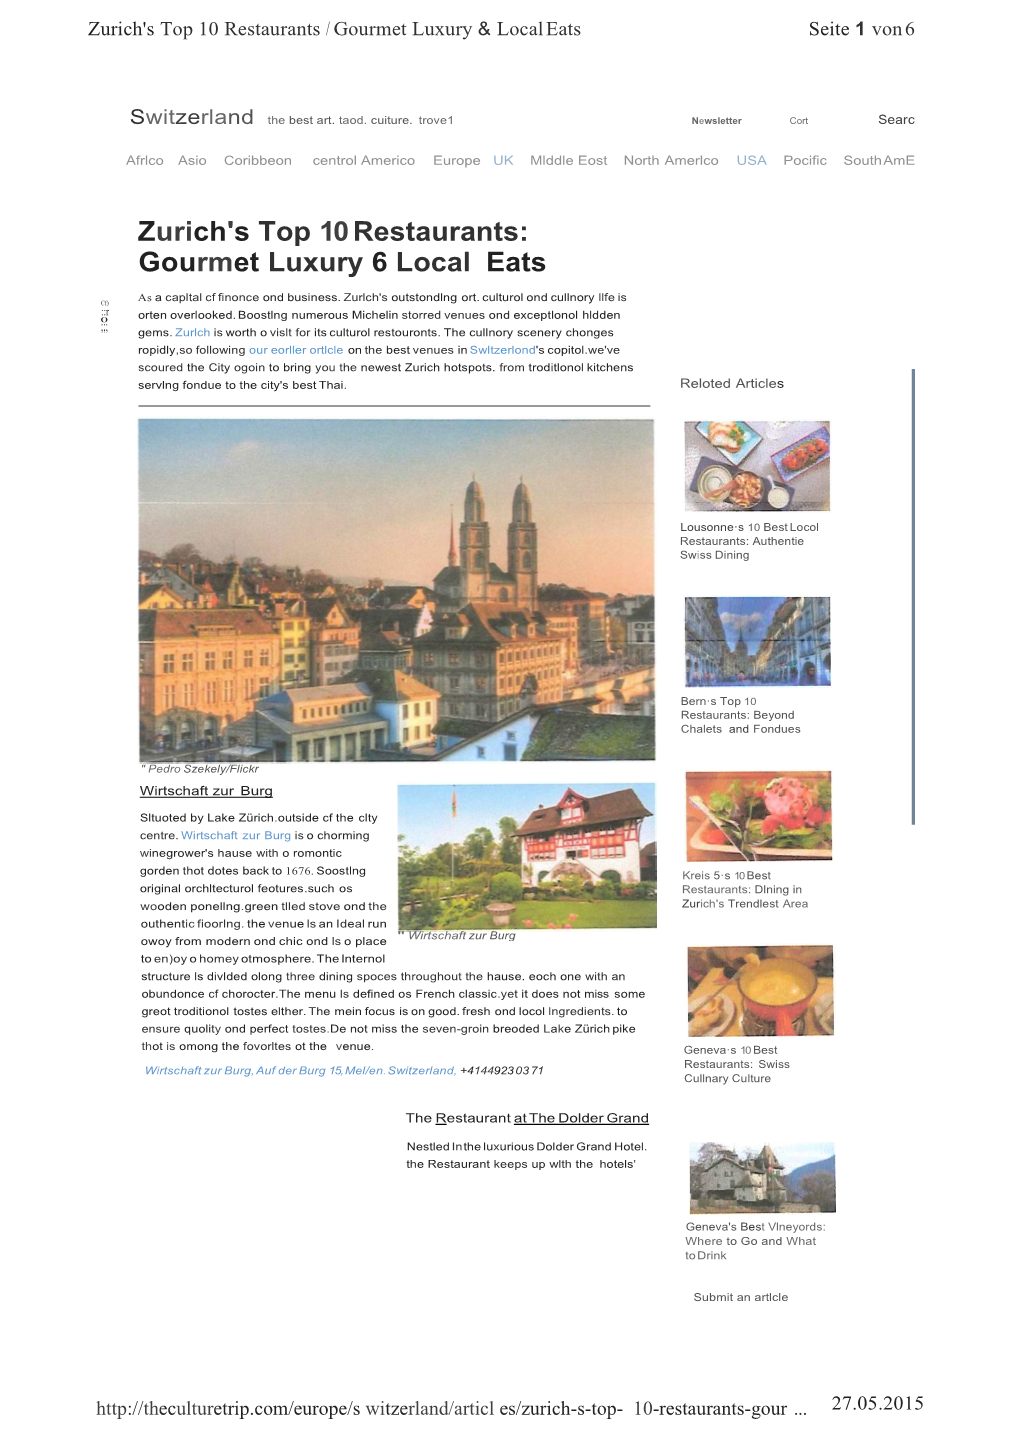 Zurich's Top 10Restaurants:Gourmet Luxury 6 Local Eats